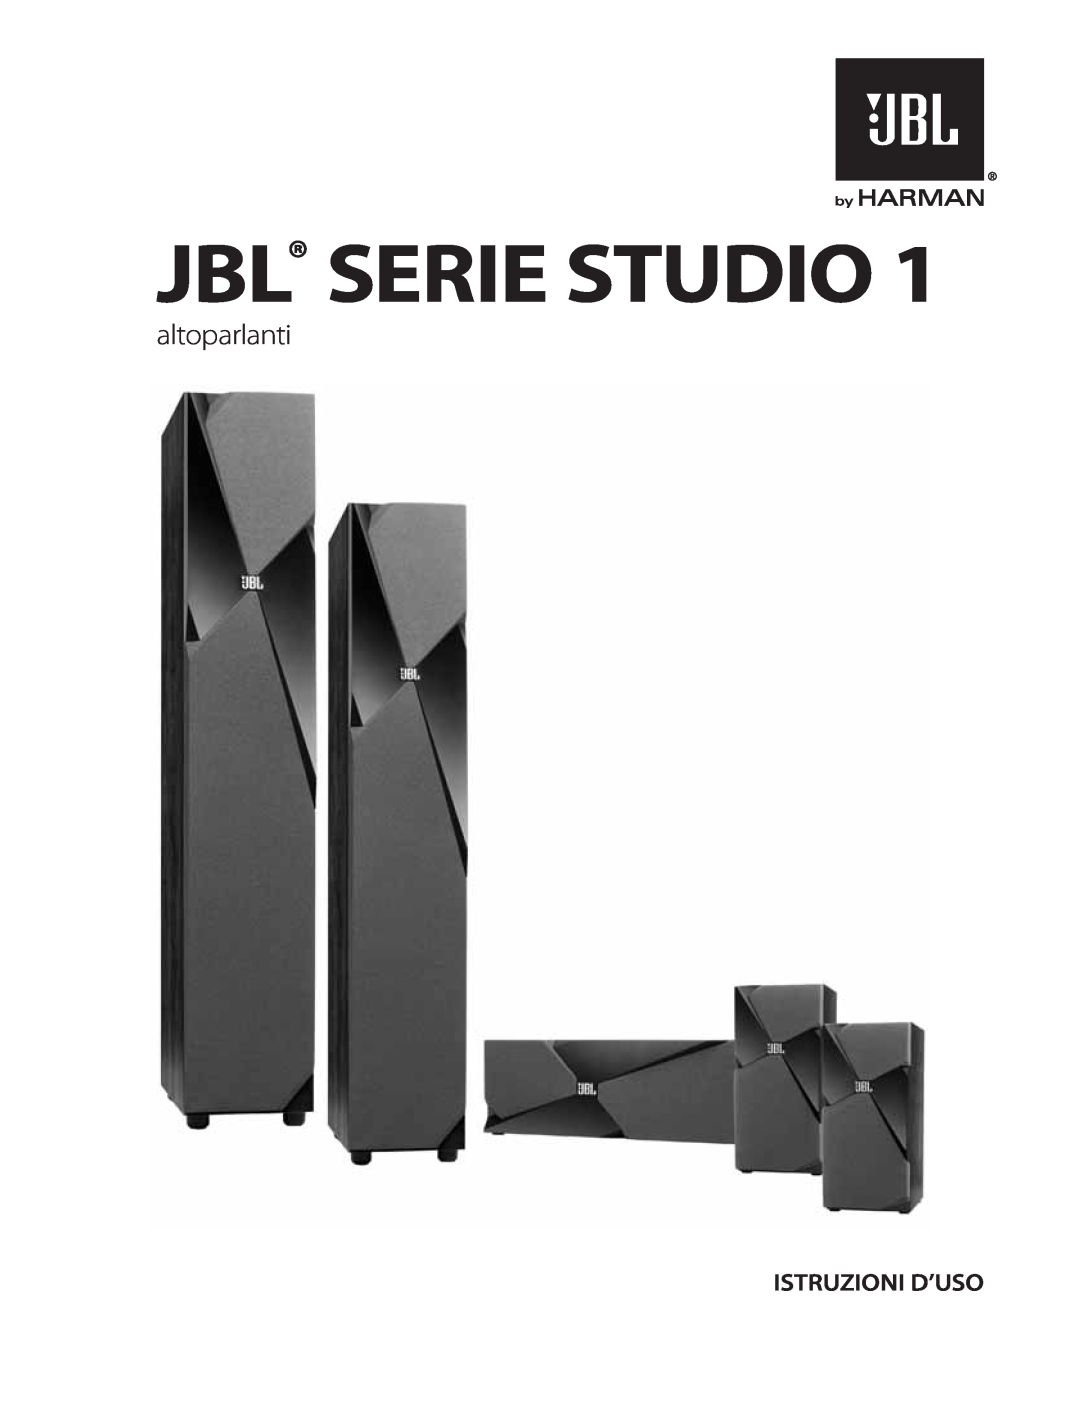 JBL STUDIO180 manual Jbl Serie Studio, altoparlanti, Istruzioni D’Uso 